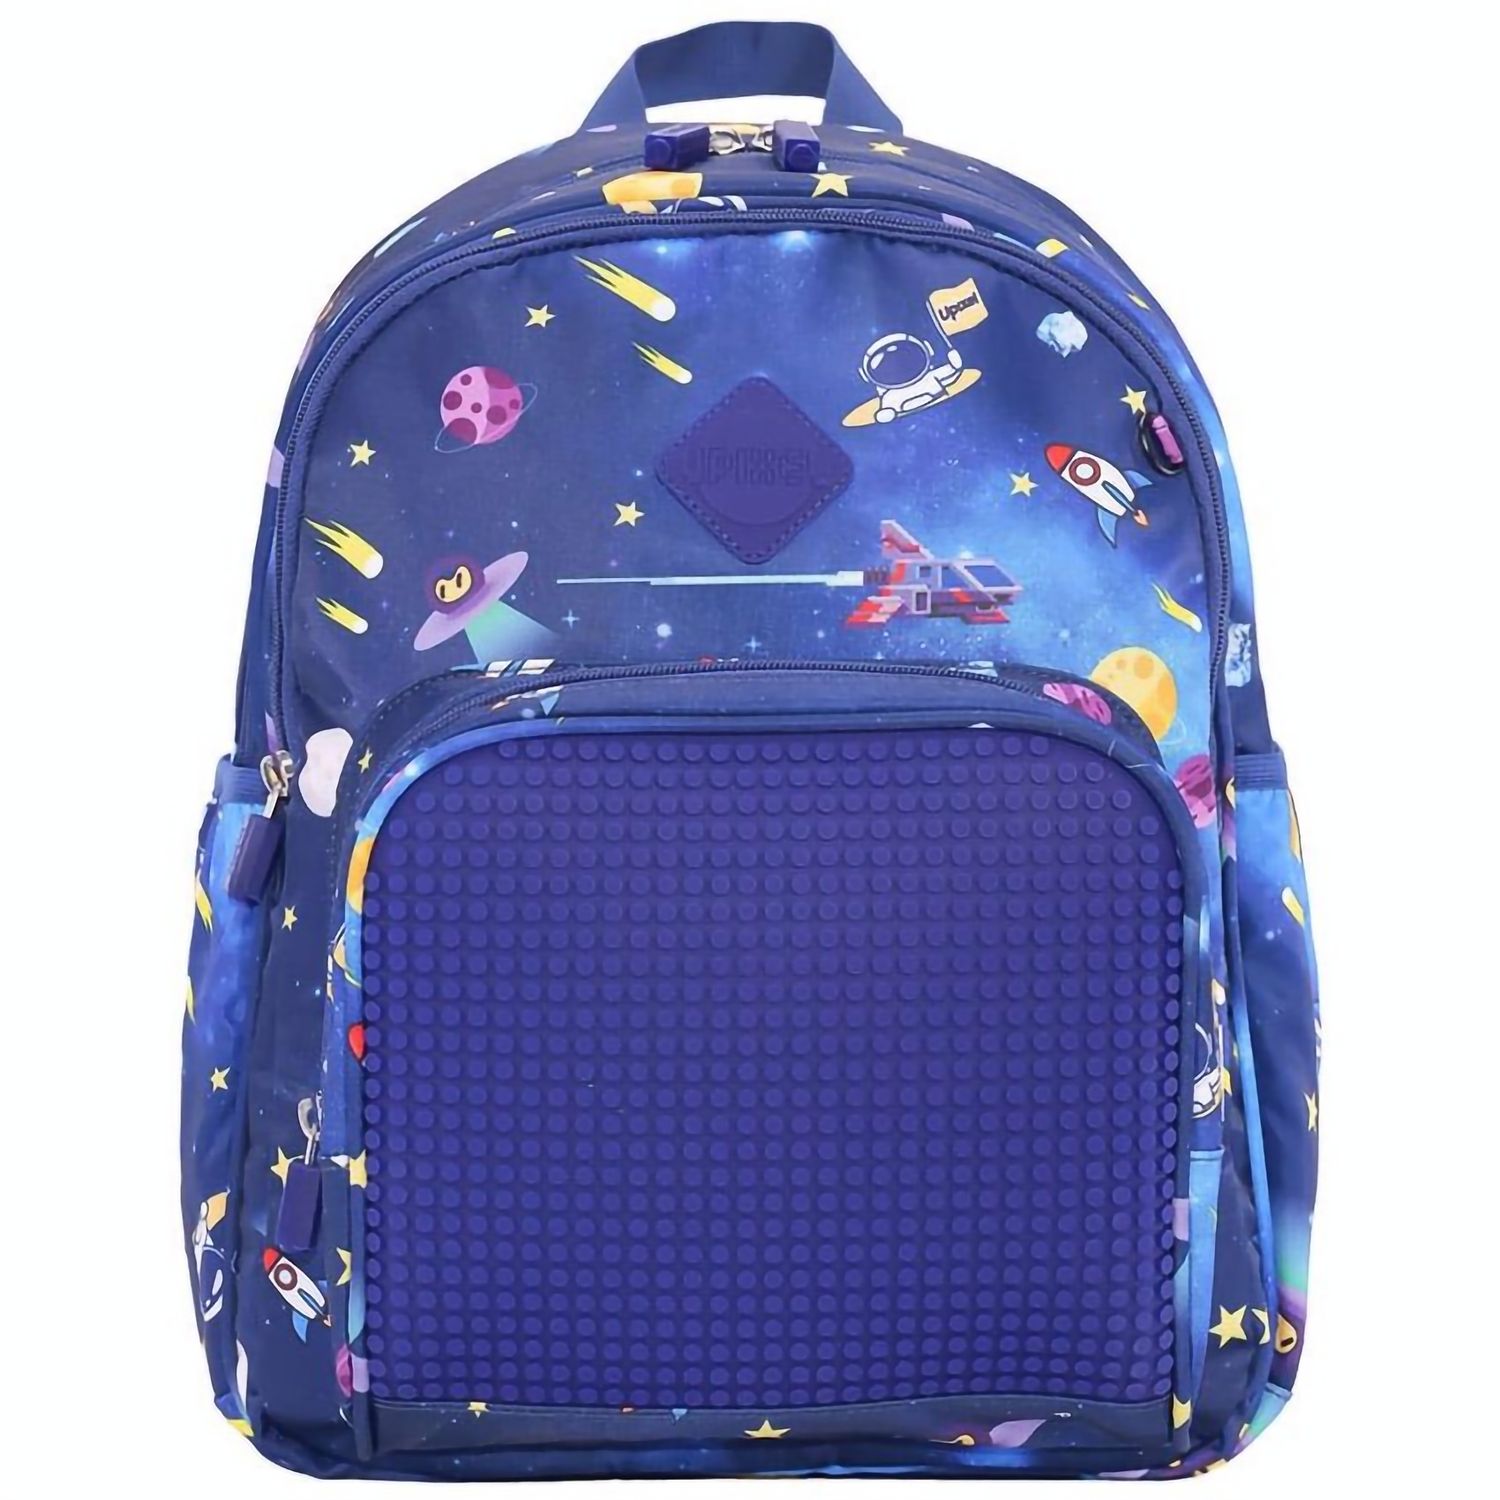 Рюкзак Upixel Futuristic Kids School Bag, темно-синий - фото 1